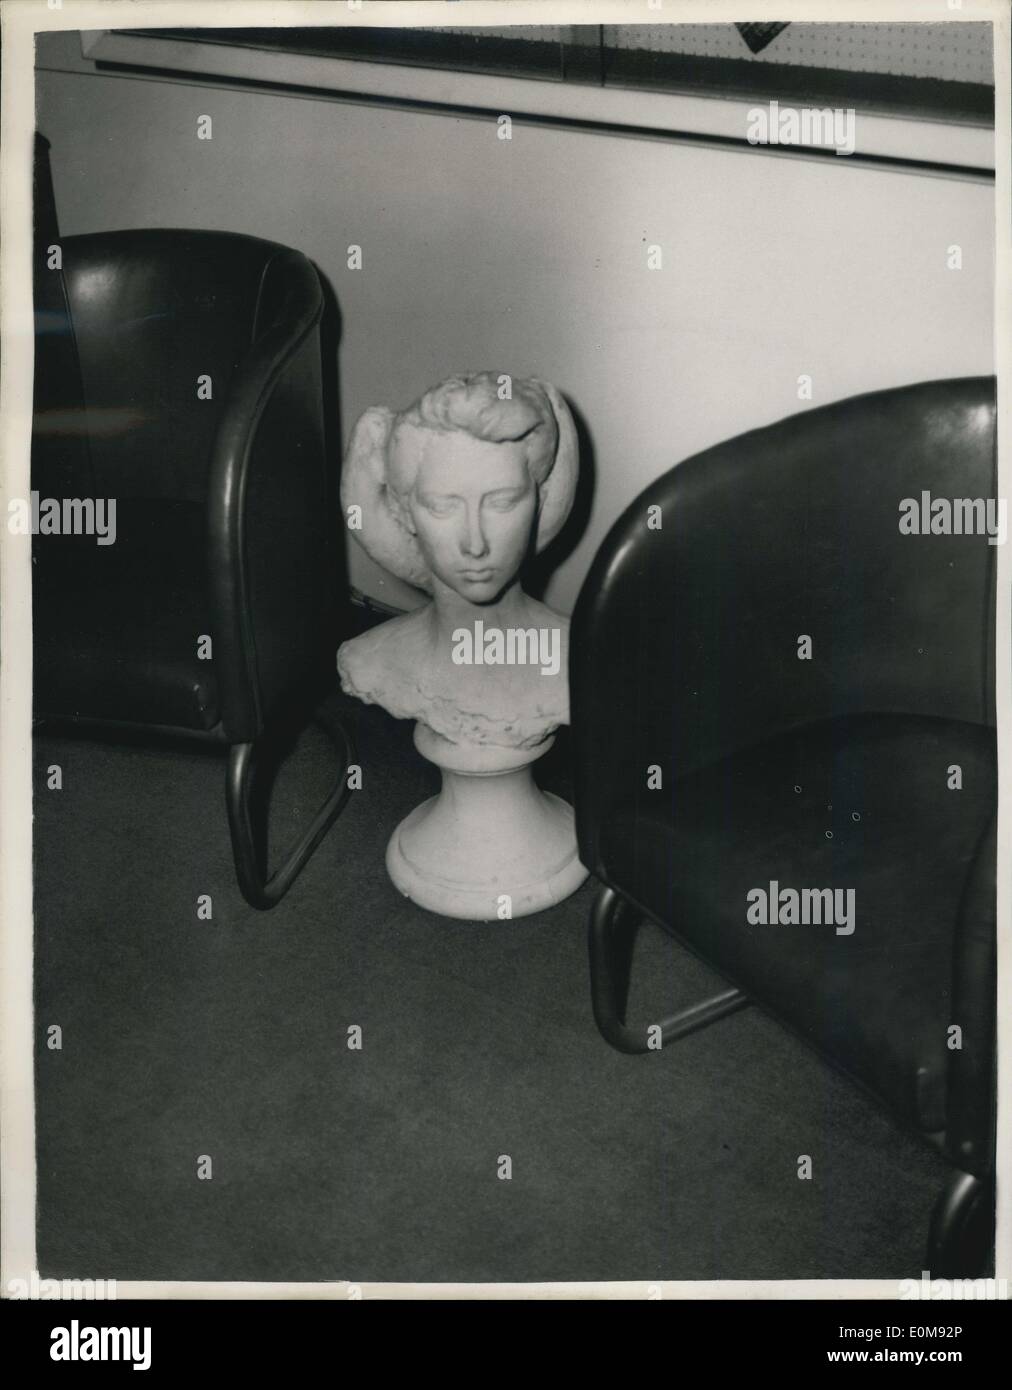 11 févr., 1954 - Cast ''The Queen'' a été retiré. Un moulage en plâtre d'une tête et des épaules de la jeune fille, d'être utilisé à des fins d'affichage Banque D'Images